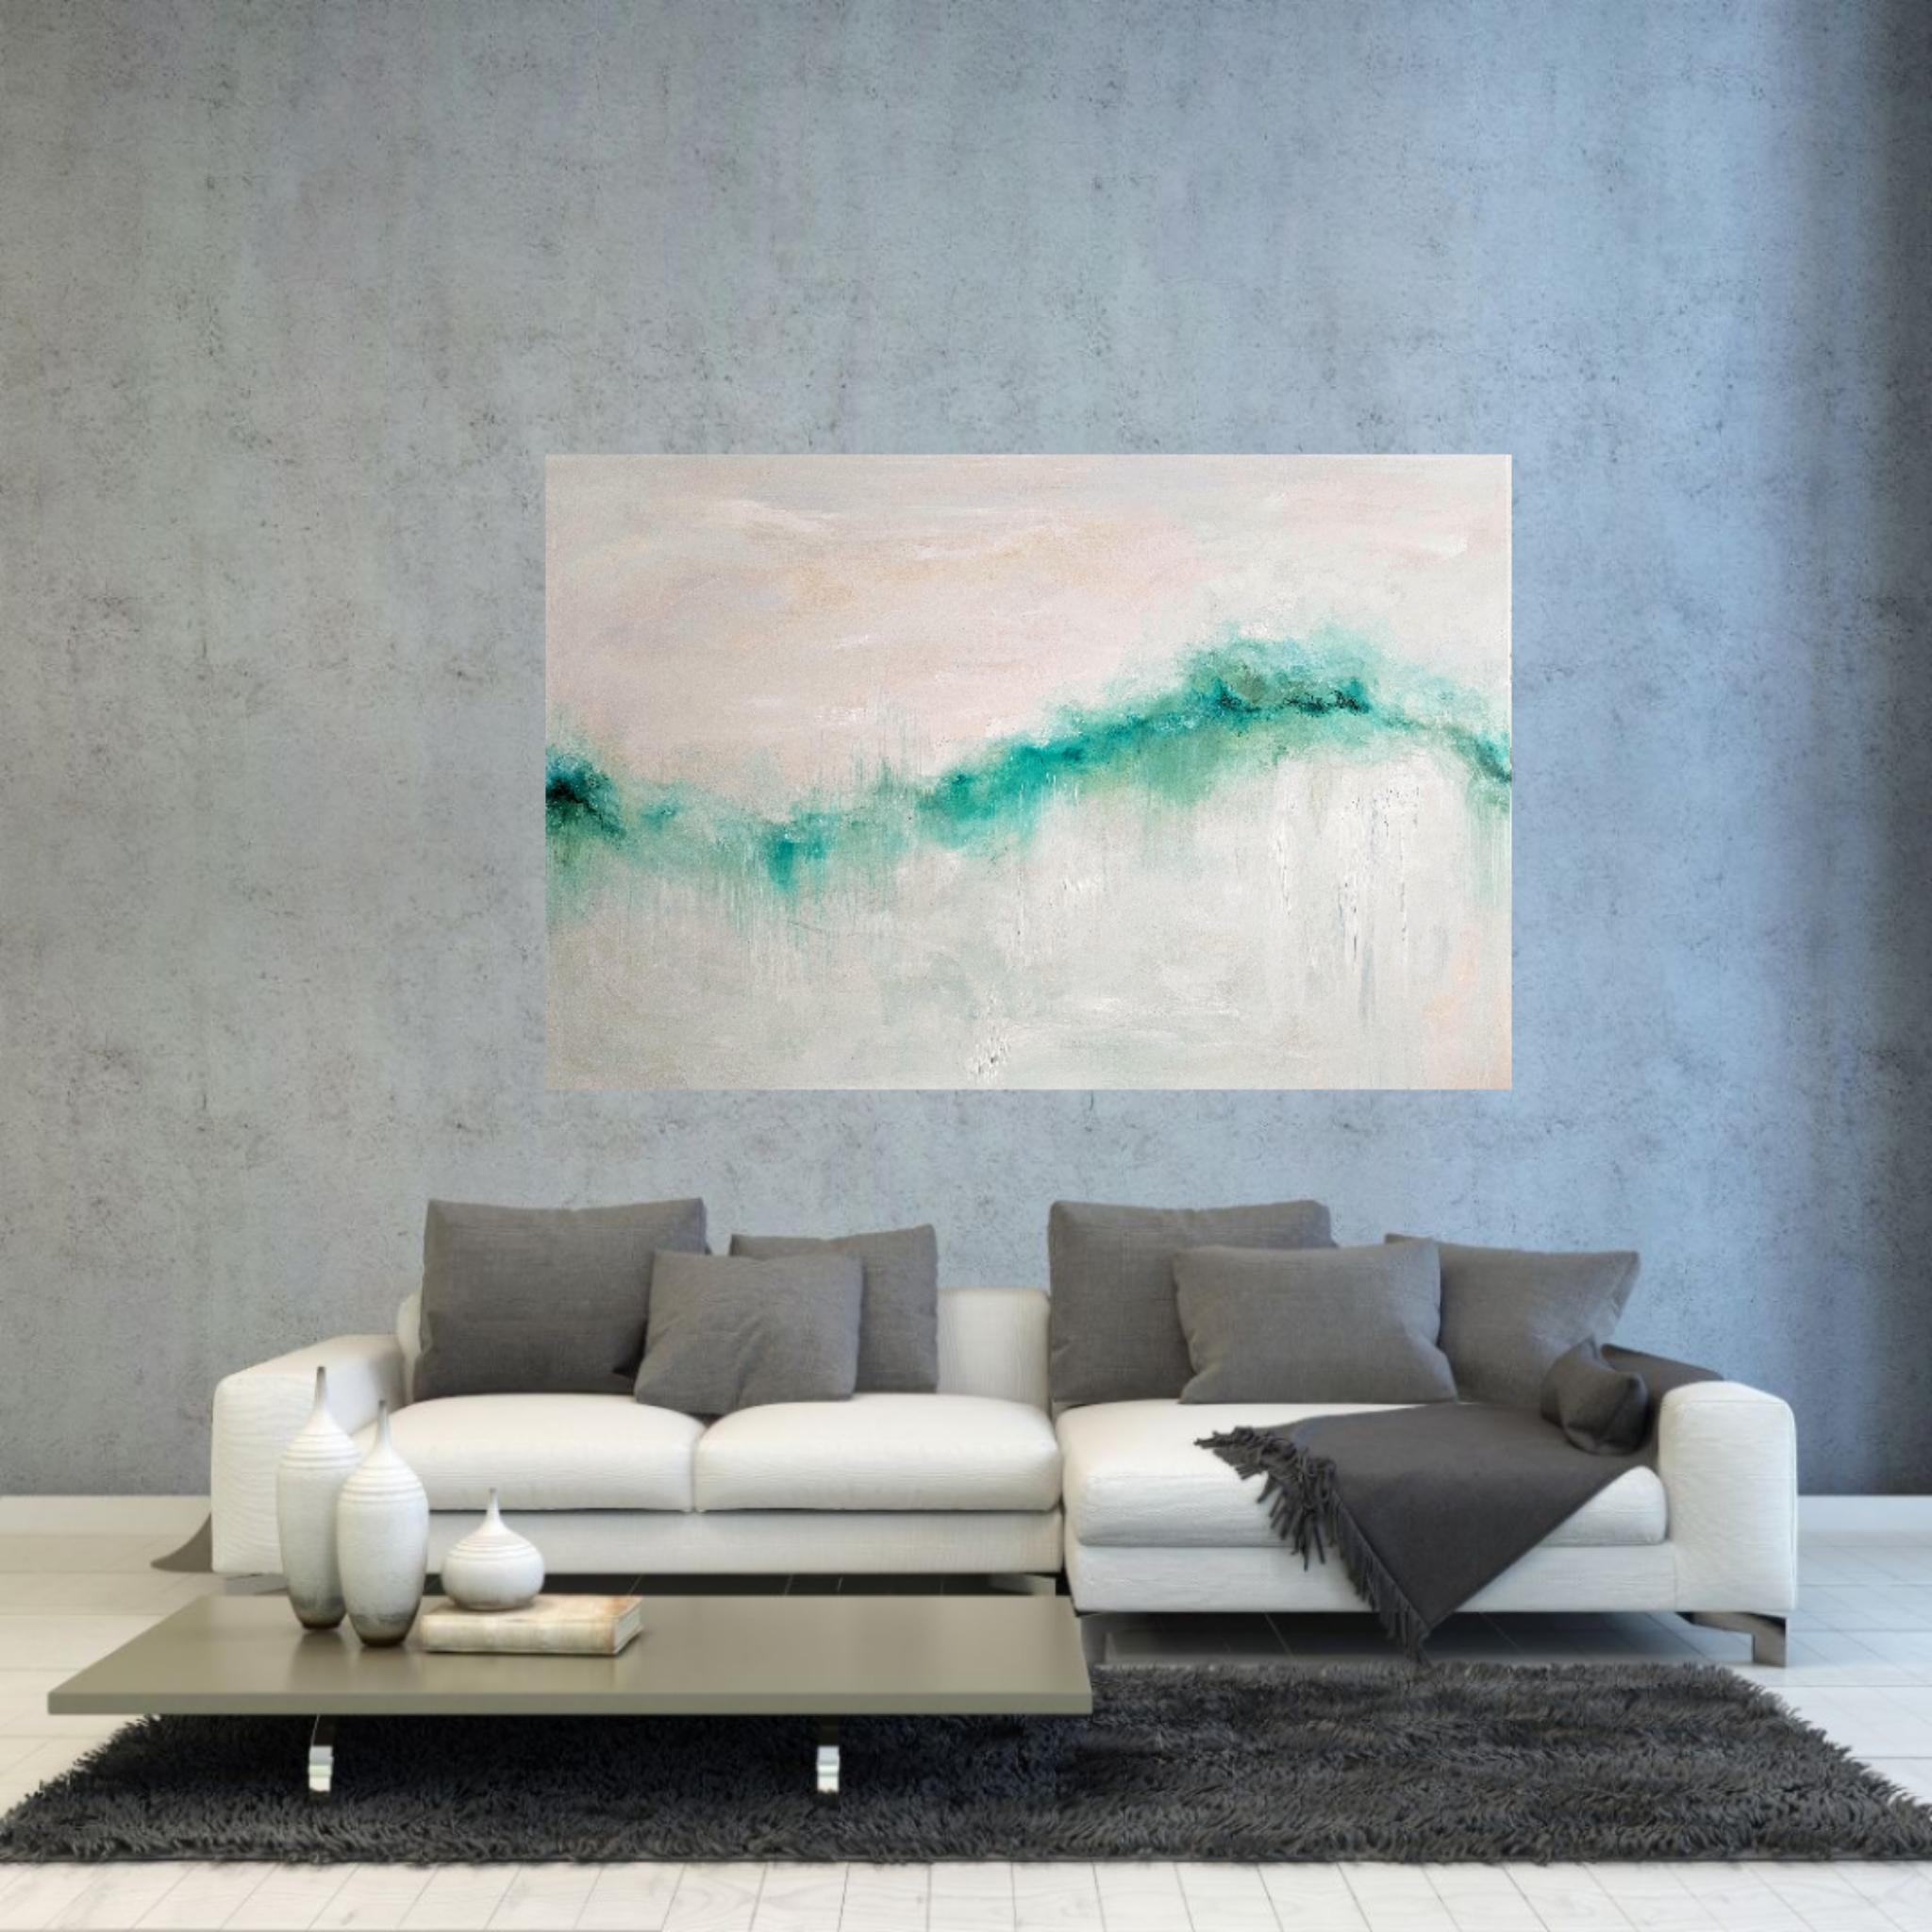 J'ai rêvé de la mer - Grande peinture abstraite de paysage marin - Gris Landscape Painting par Jennifer L. Baker